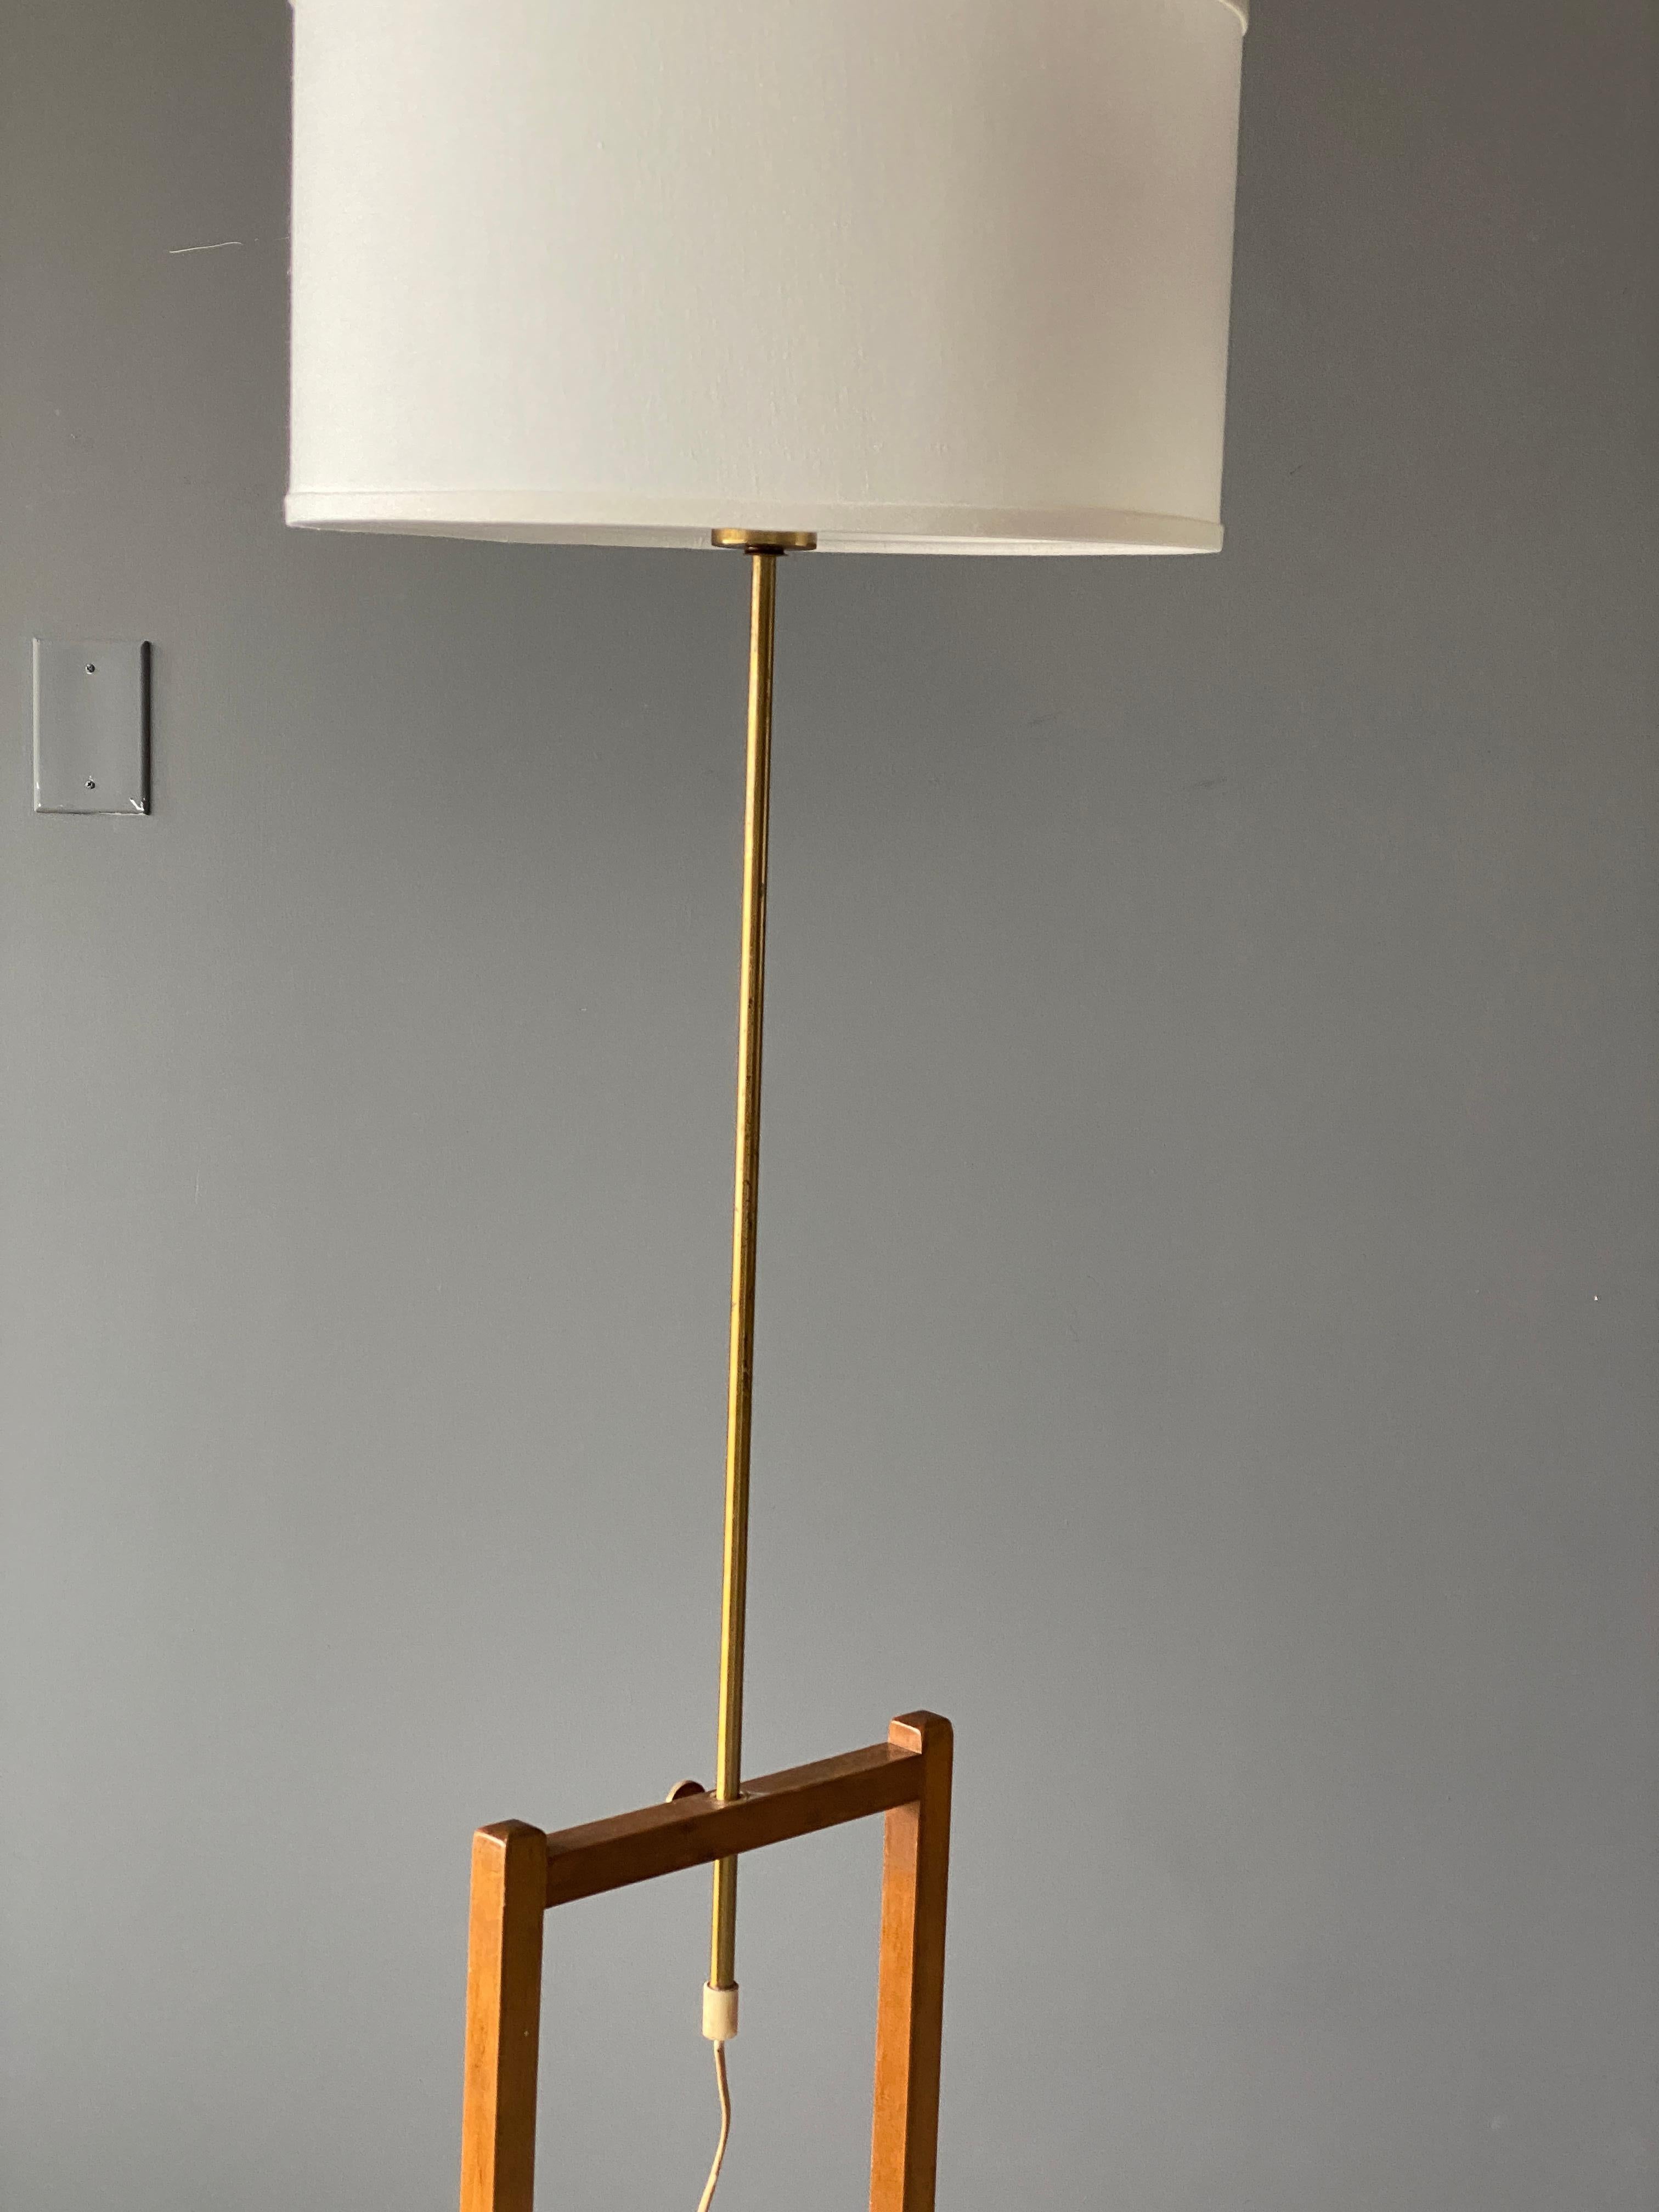 Mid-20th Century Josef Frank, Early Adjustable Floor Lamps, Brass, Mahogany, Svenskt Tenn, 1950s